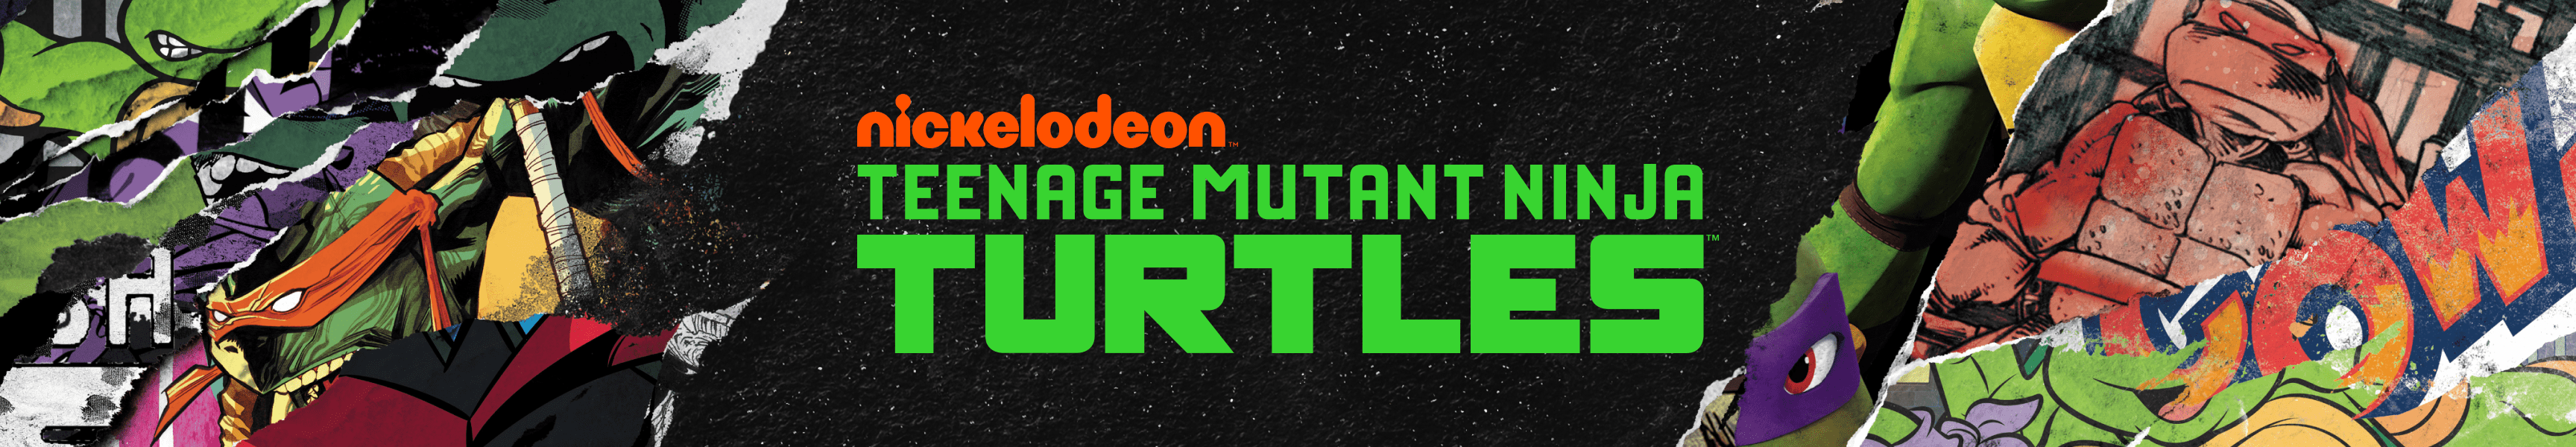 Teenage Mutant Ninja Turtles Novedades